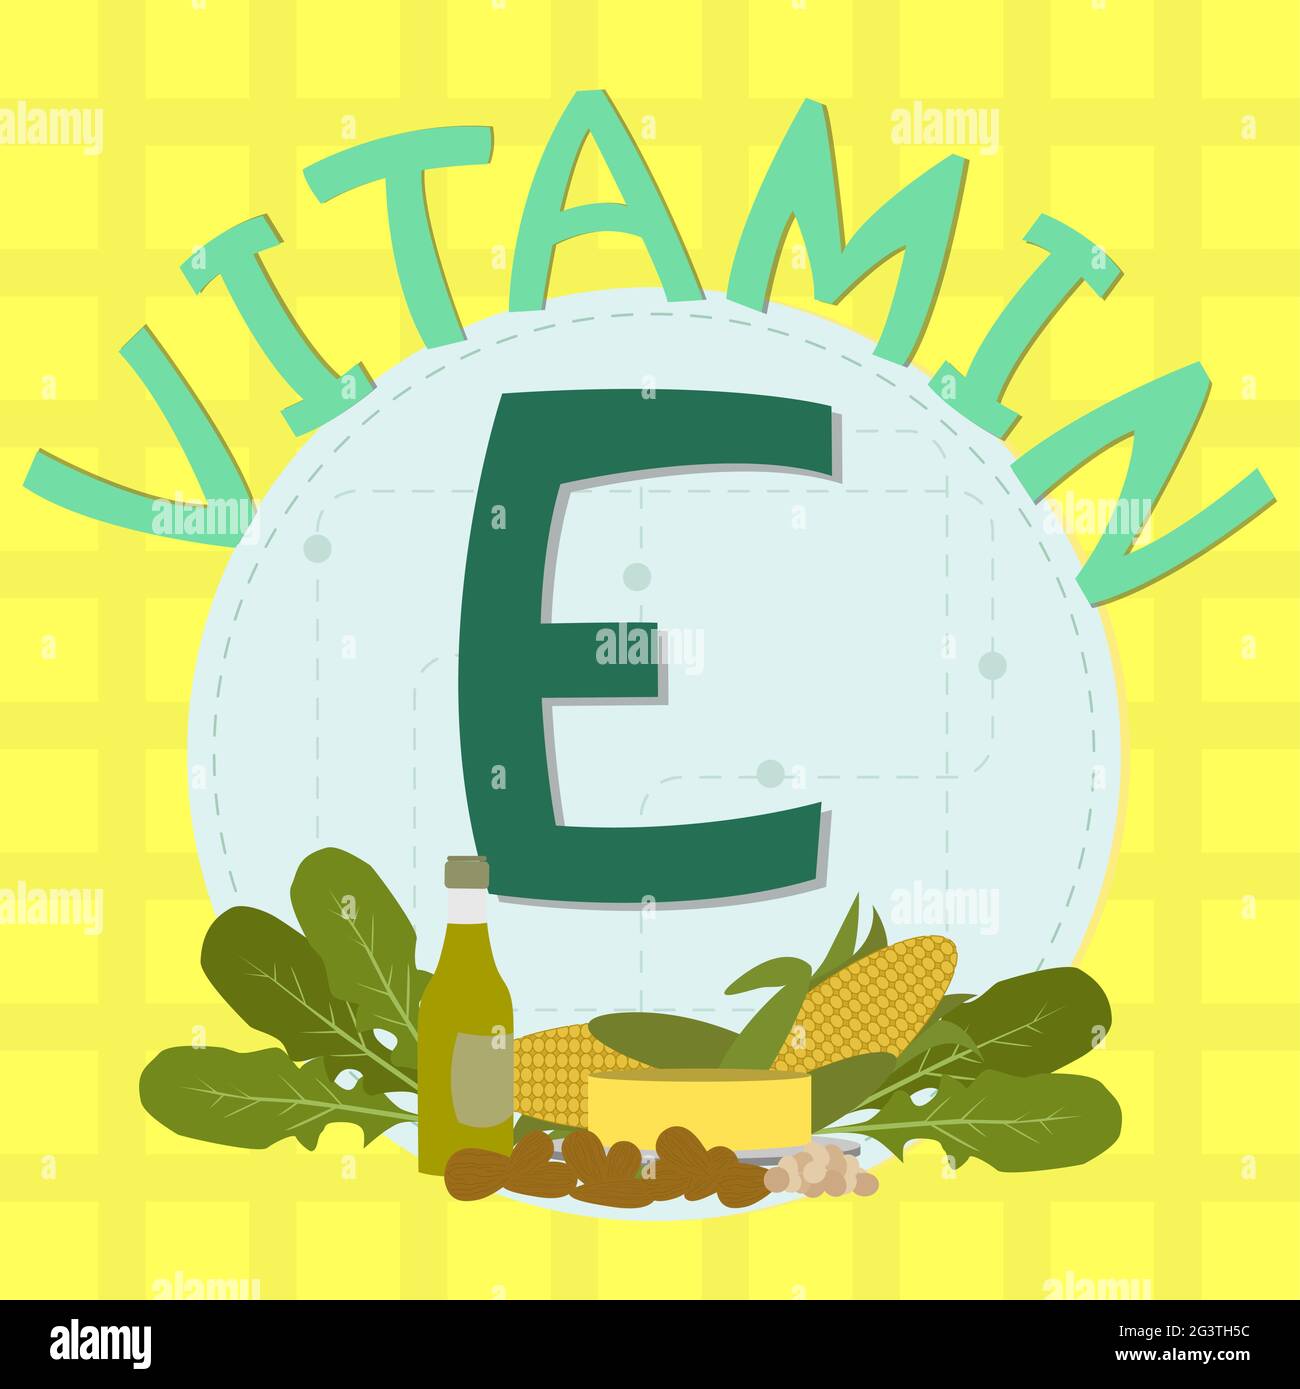 Design coloré de vitamine e avec céréales, légumes à feuilles, huile d'olive, amandes, huile, beurre, maïs et expression « vitamine c ». Illustration de Vecteur